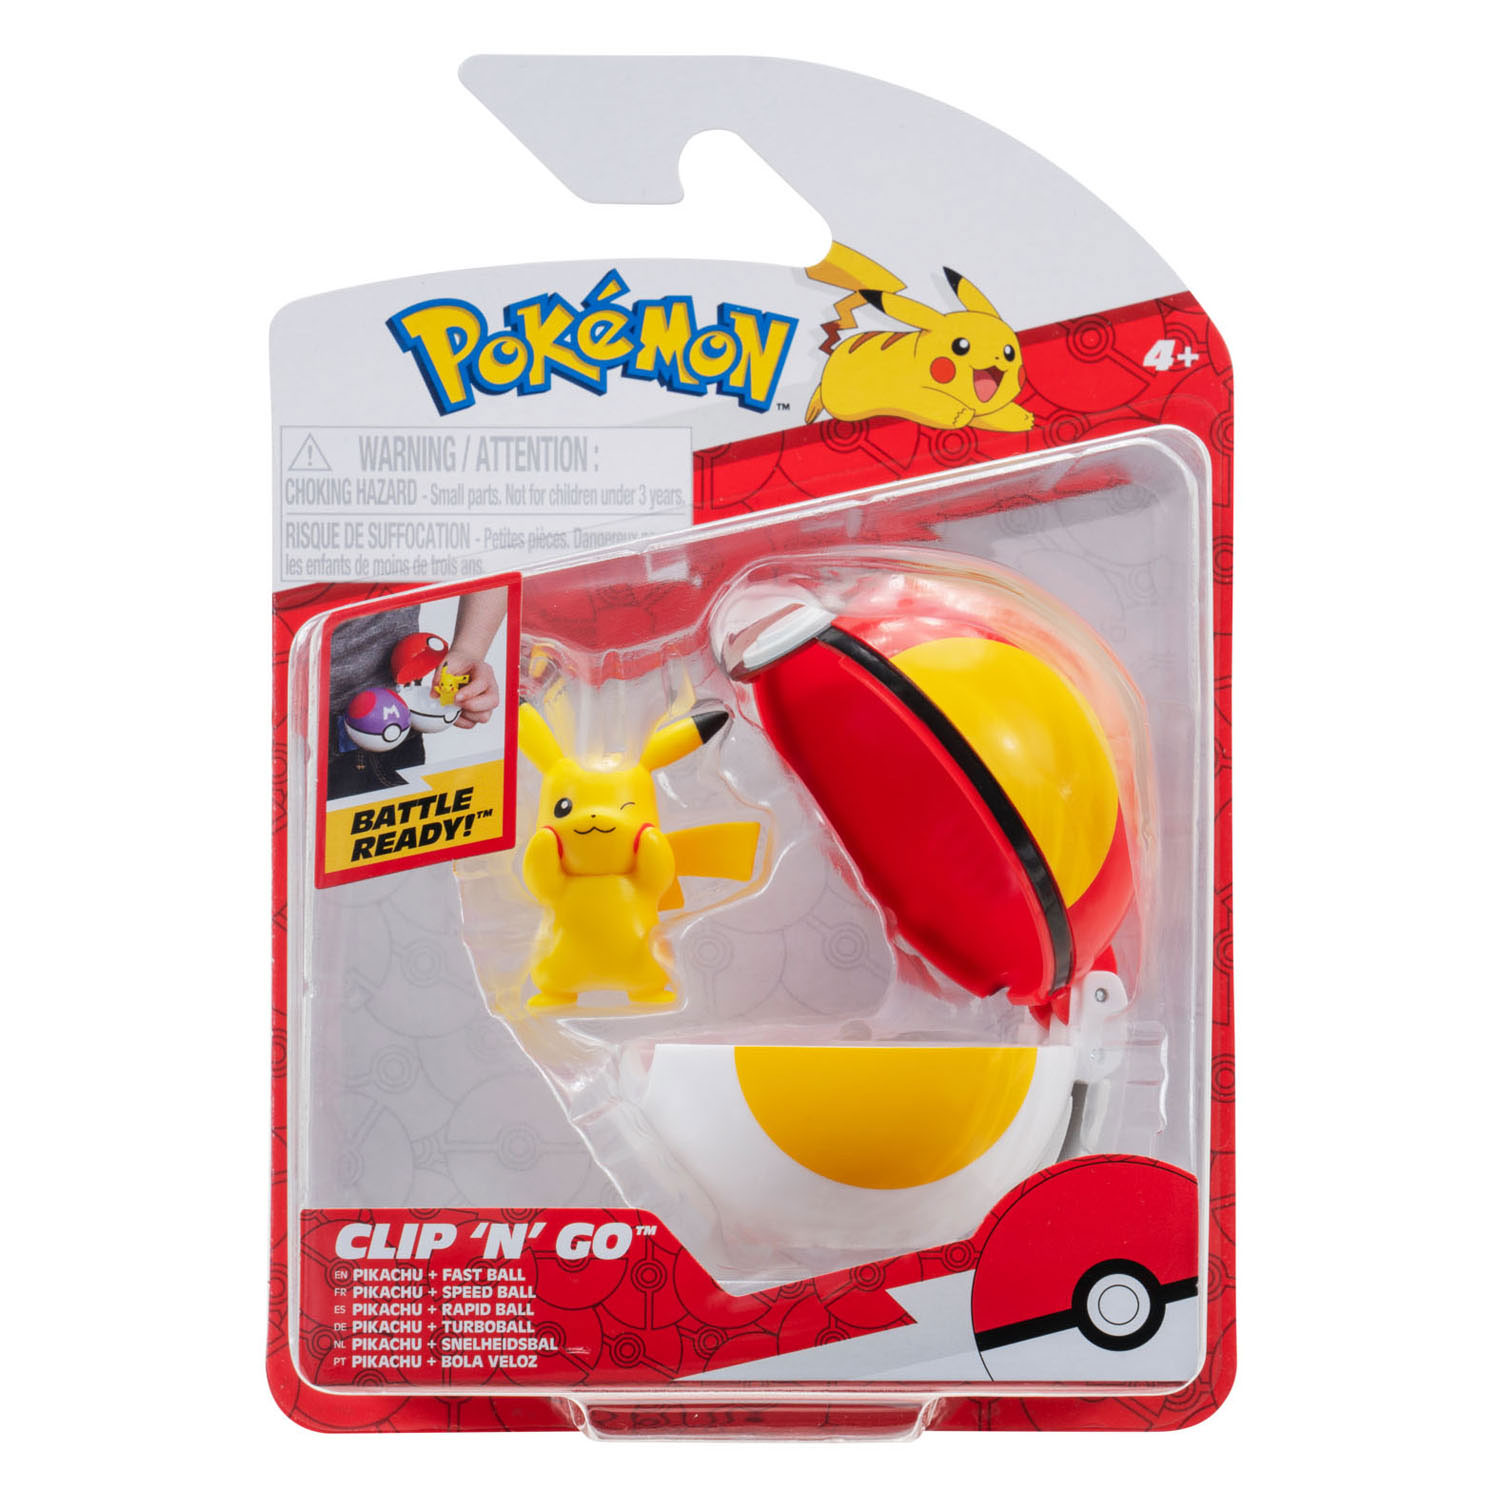 Pokémon Clip 'N' Go Pikachu und Fast Ball Spielset, 2 Stück.